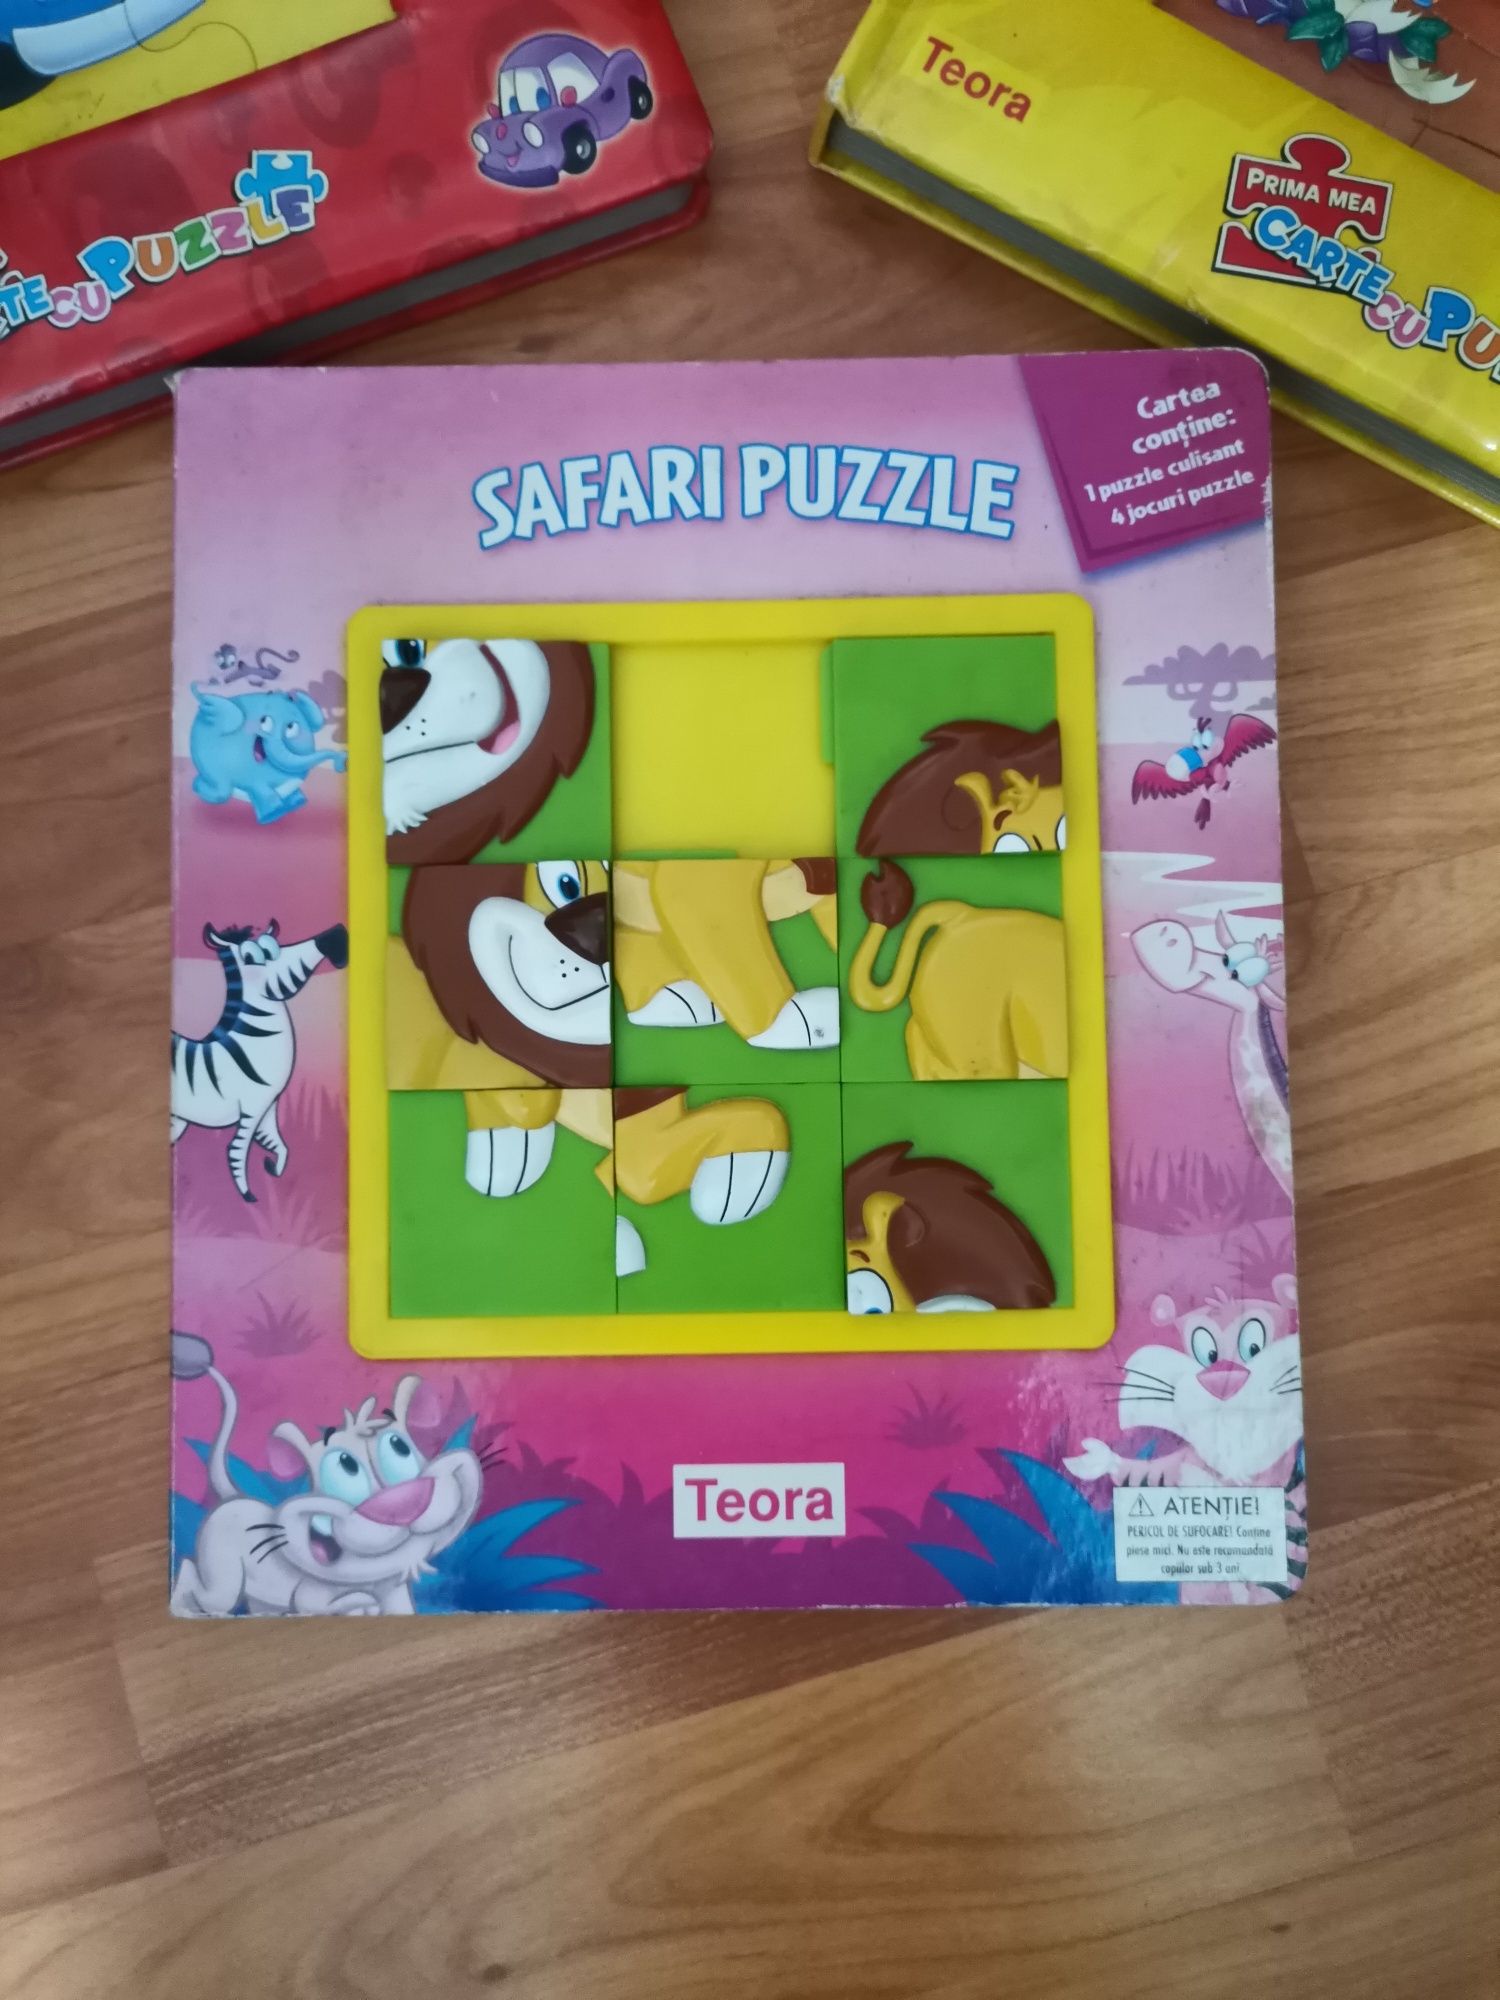 Lot cărți cu puzzle copii, Dinozauri, mașinuțe, safari